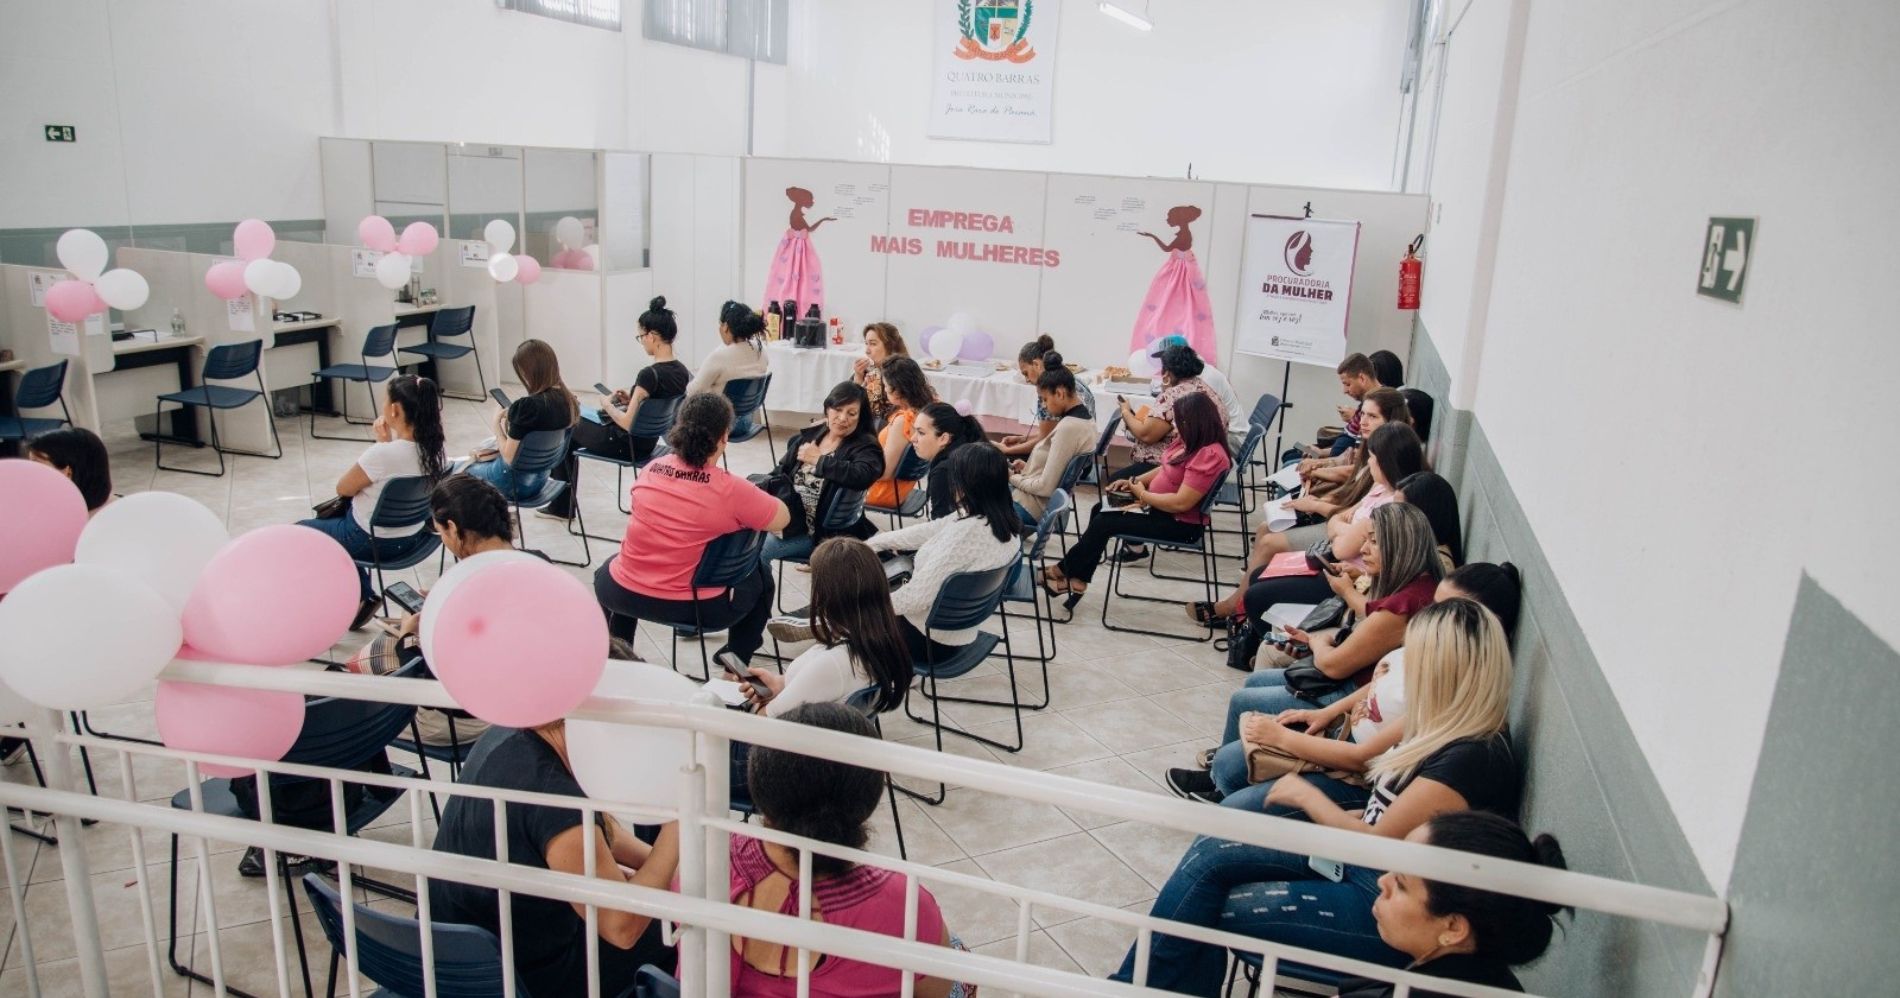 Prefeitura de Quatro Barras lança programa "Emprega + Mulheres"